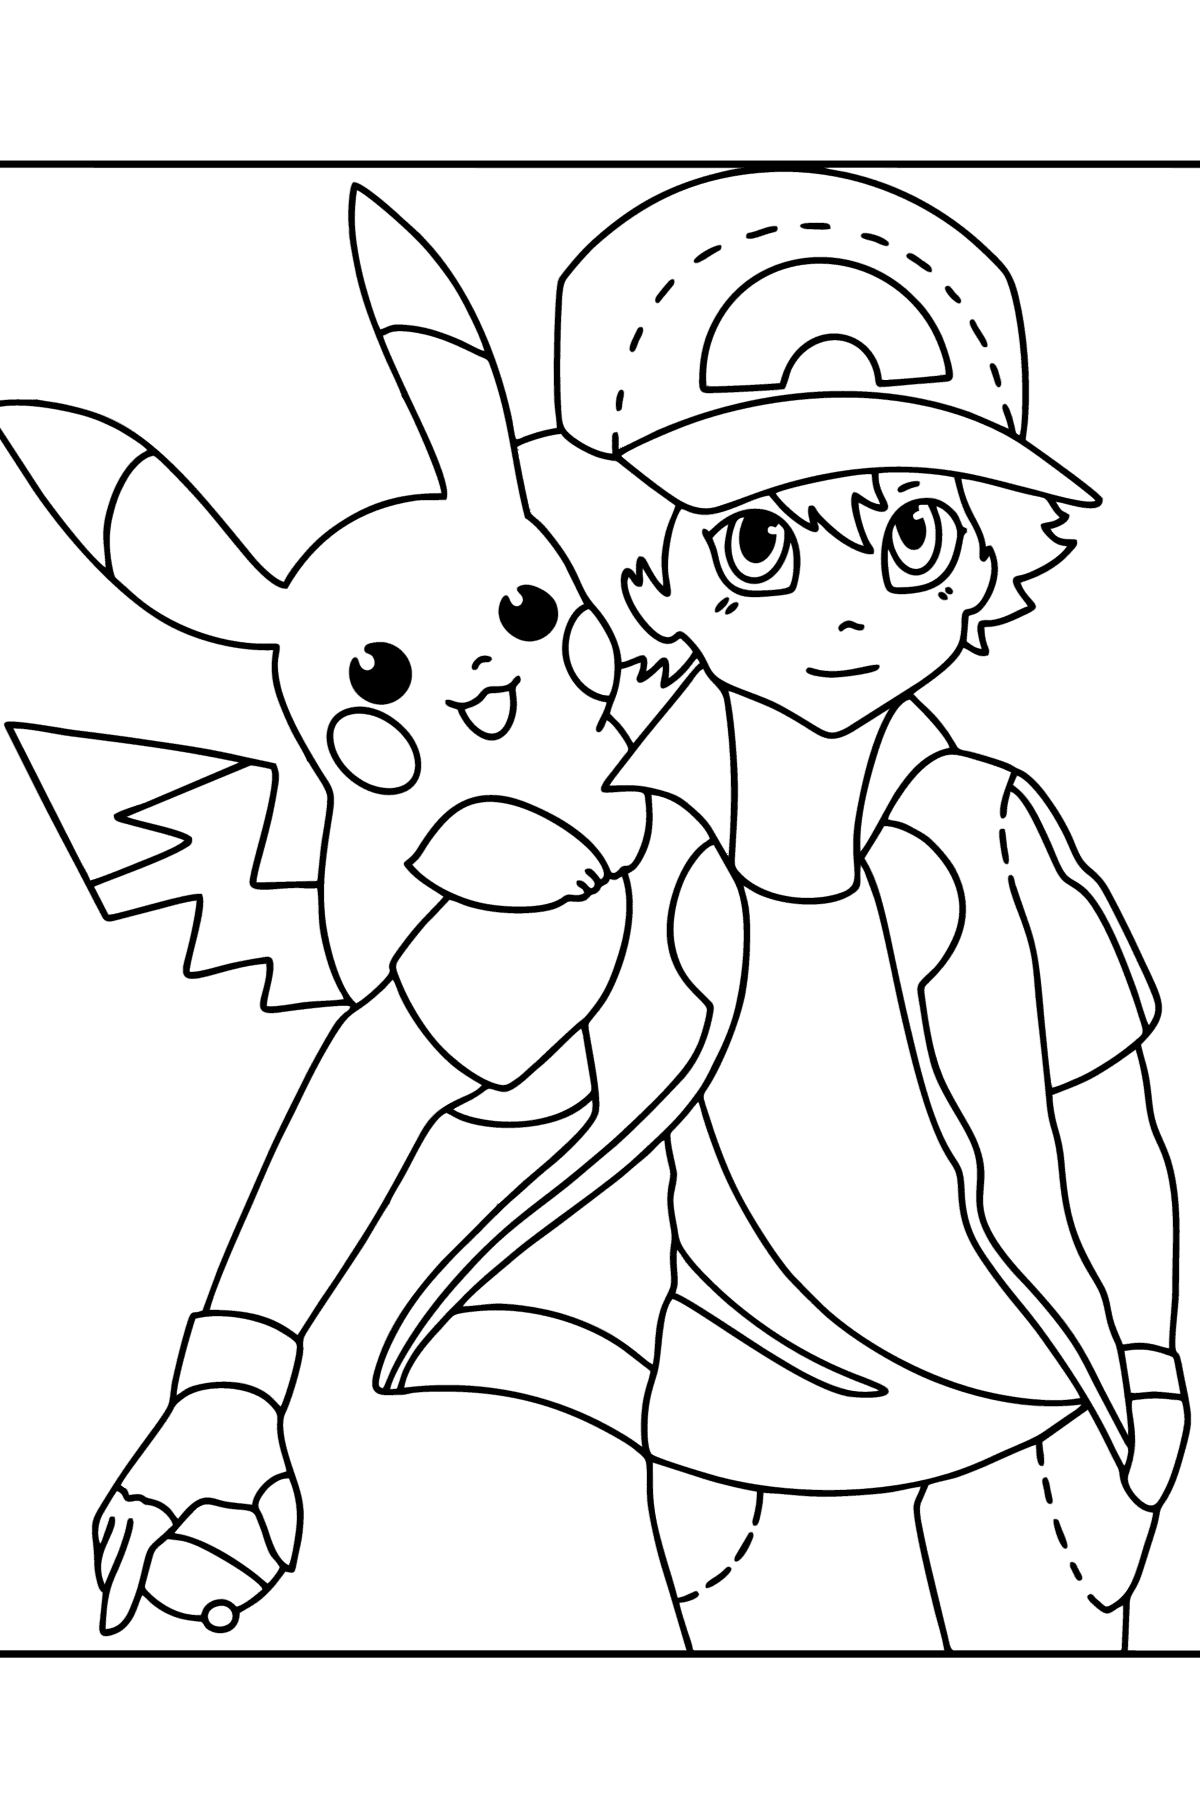 Värityskuva Pokémon XY Ash Ketchum - Värityskuvat lapsille